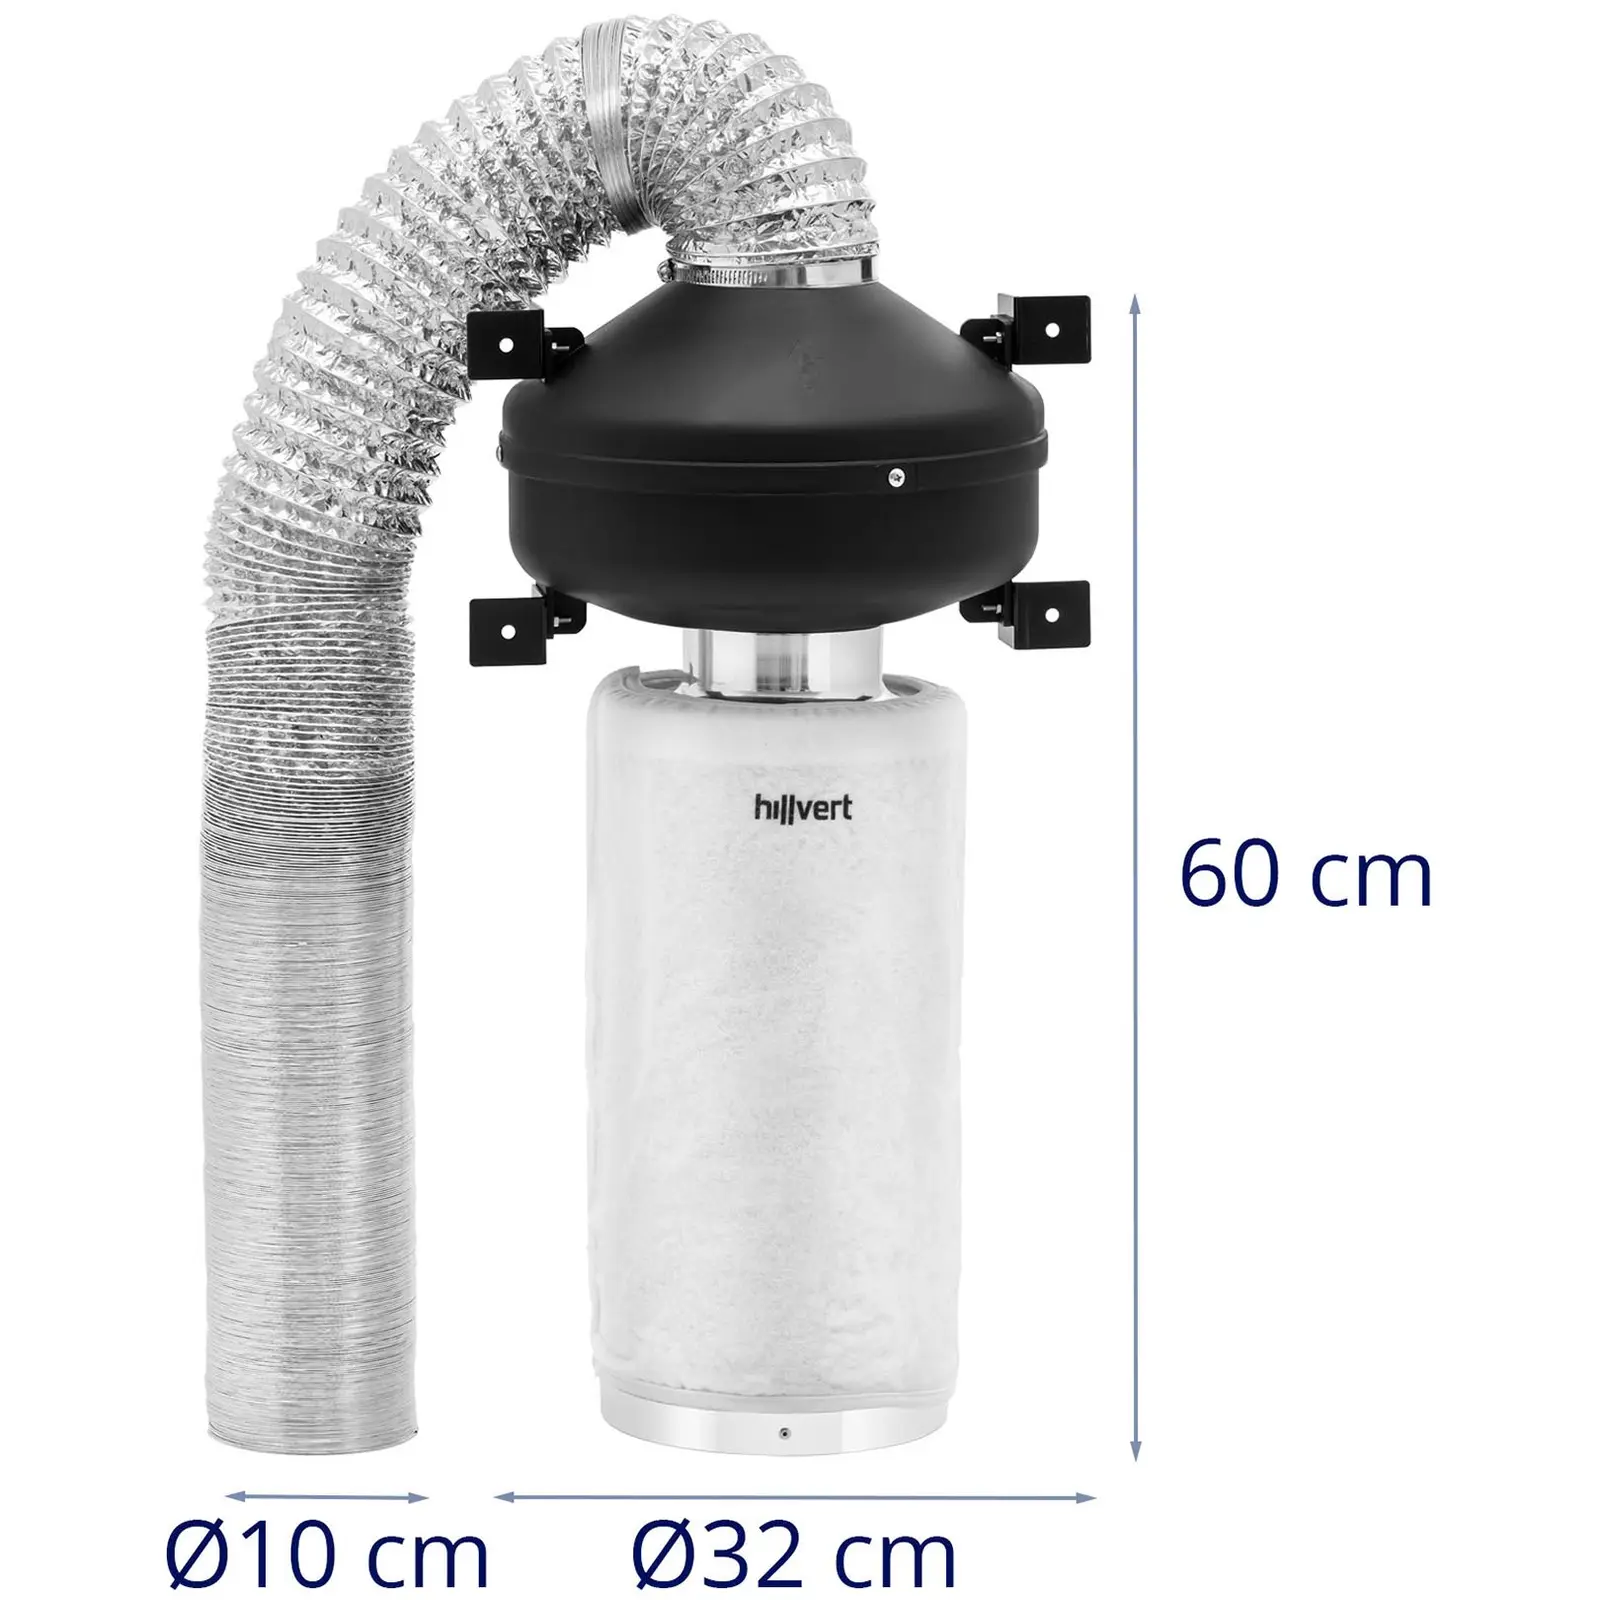 Sada pro odsávání vzduchu - 40 cm filtr s aktivním uhlím / potrubní ventilátor / hadice pro odsávání vzduchu - 249,6 m³/h - Ø 102 mm výstupní otvor